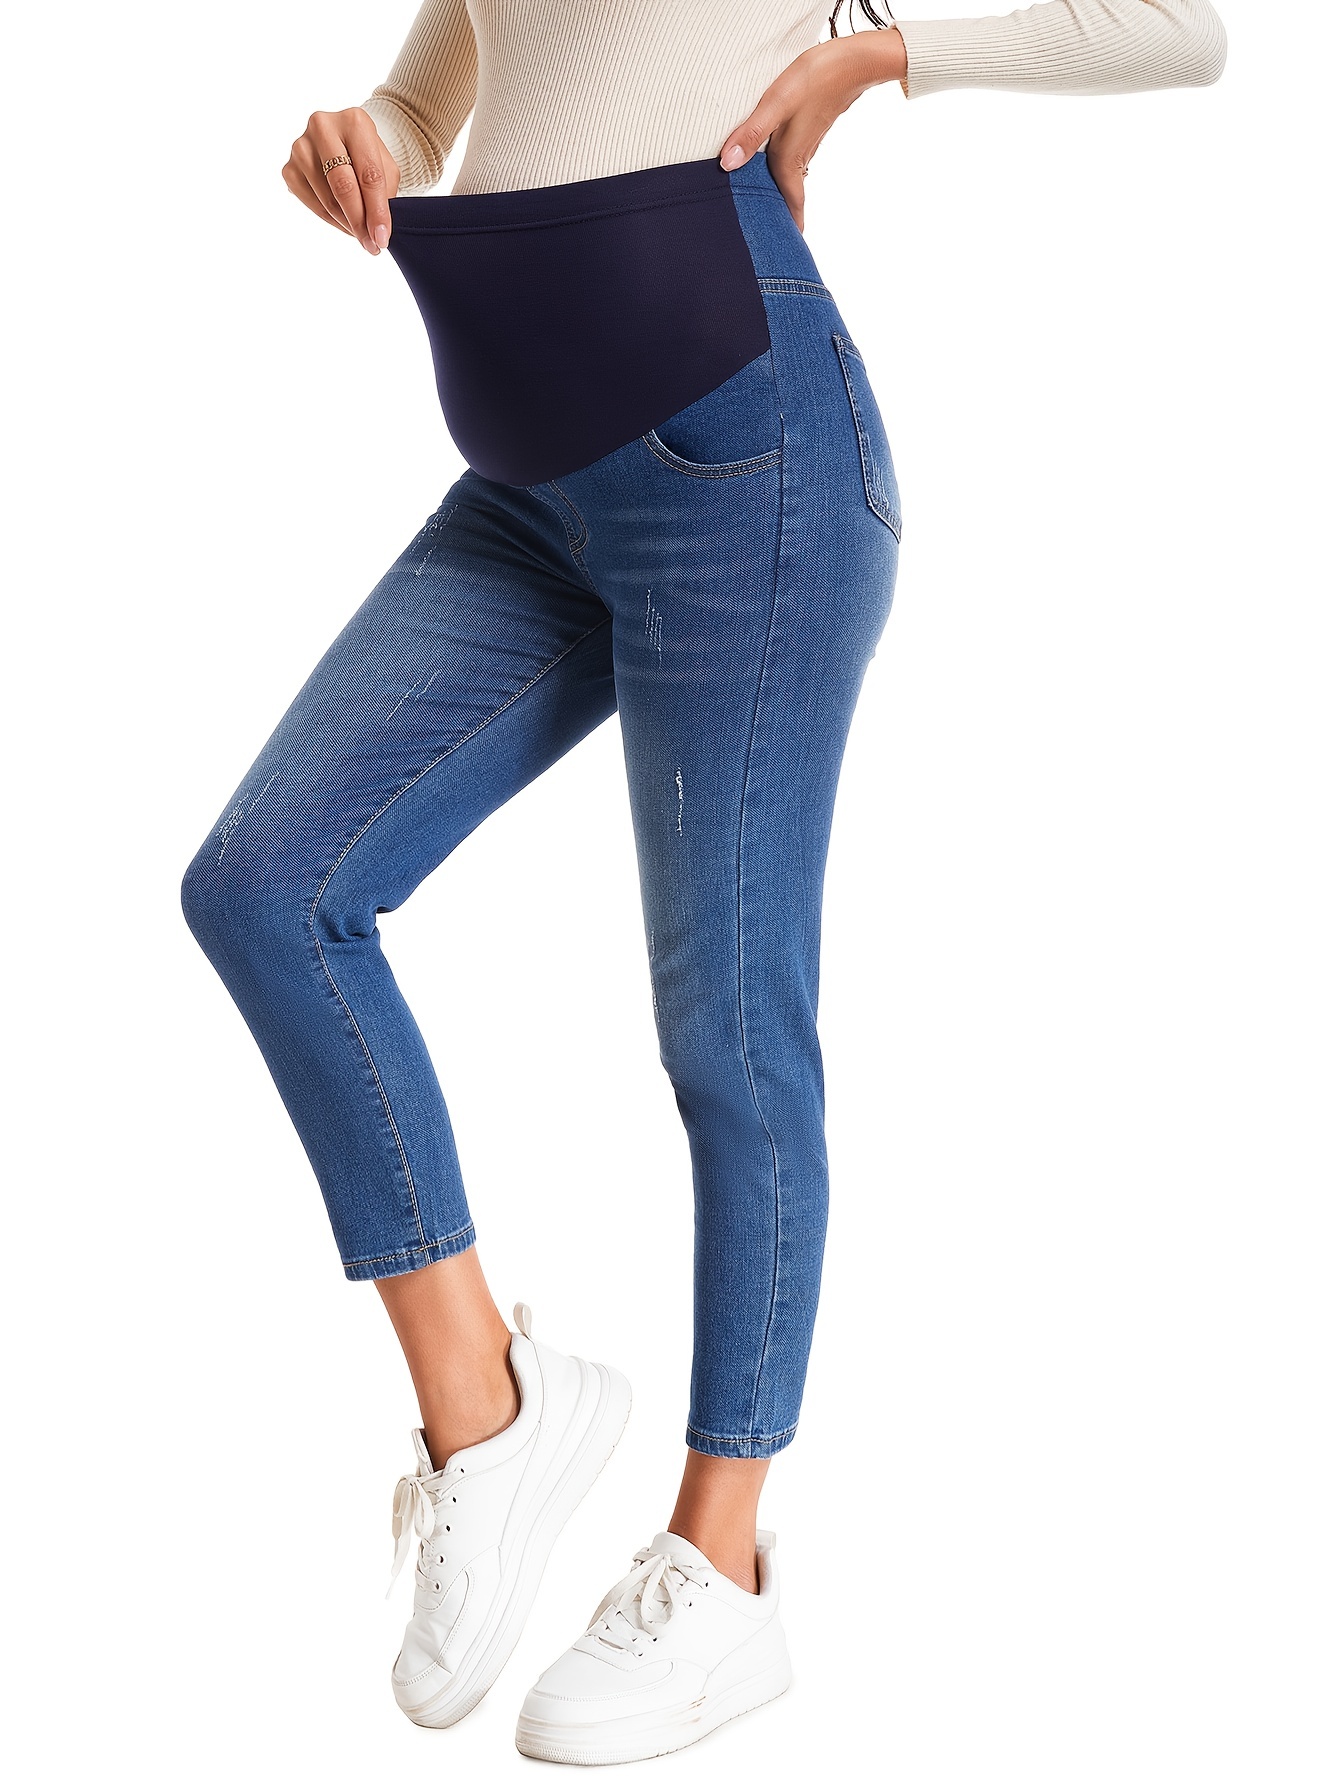 Maternidad Jeans ajustados de cintura ajustable  Ropa de maternidad, Ropa  para embarazadas, Pantalones de maternidad